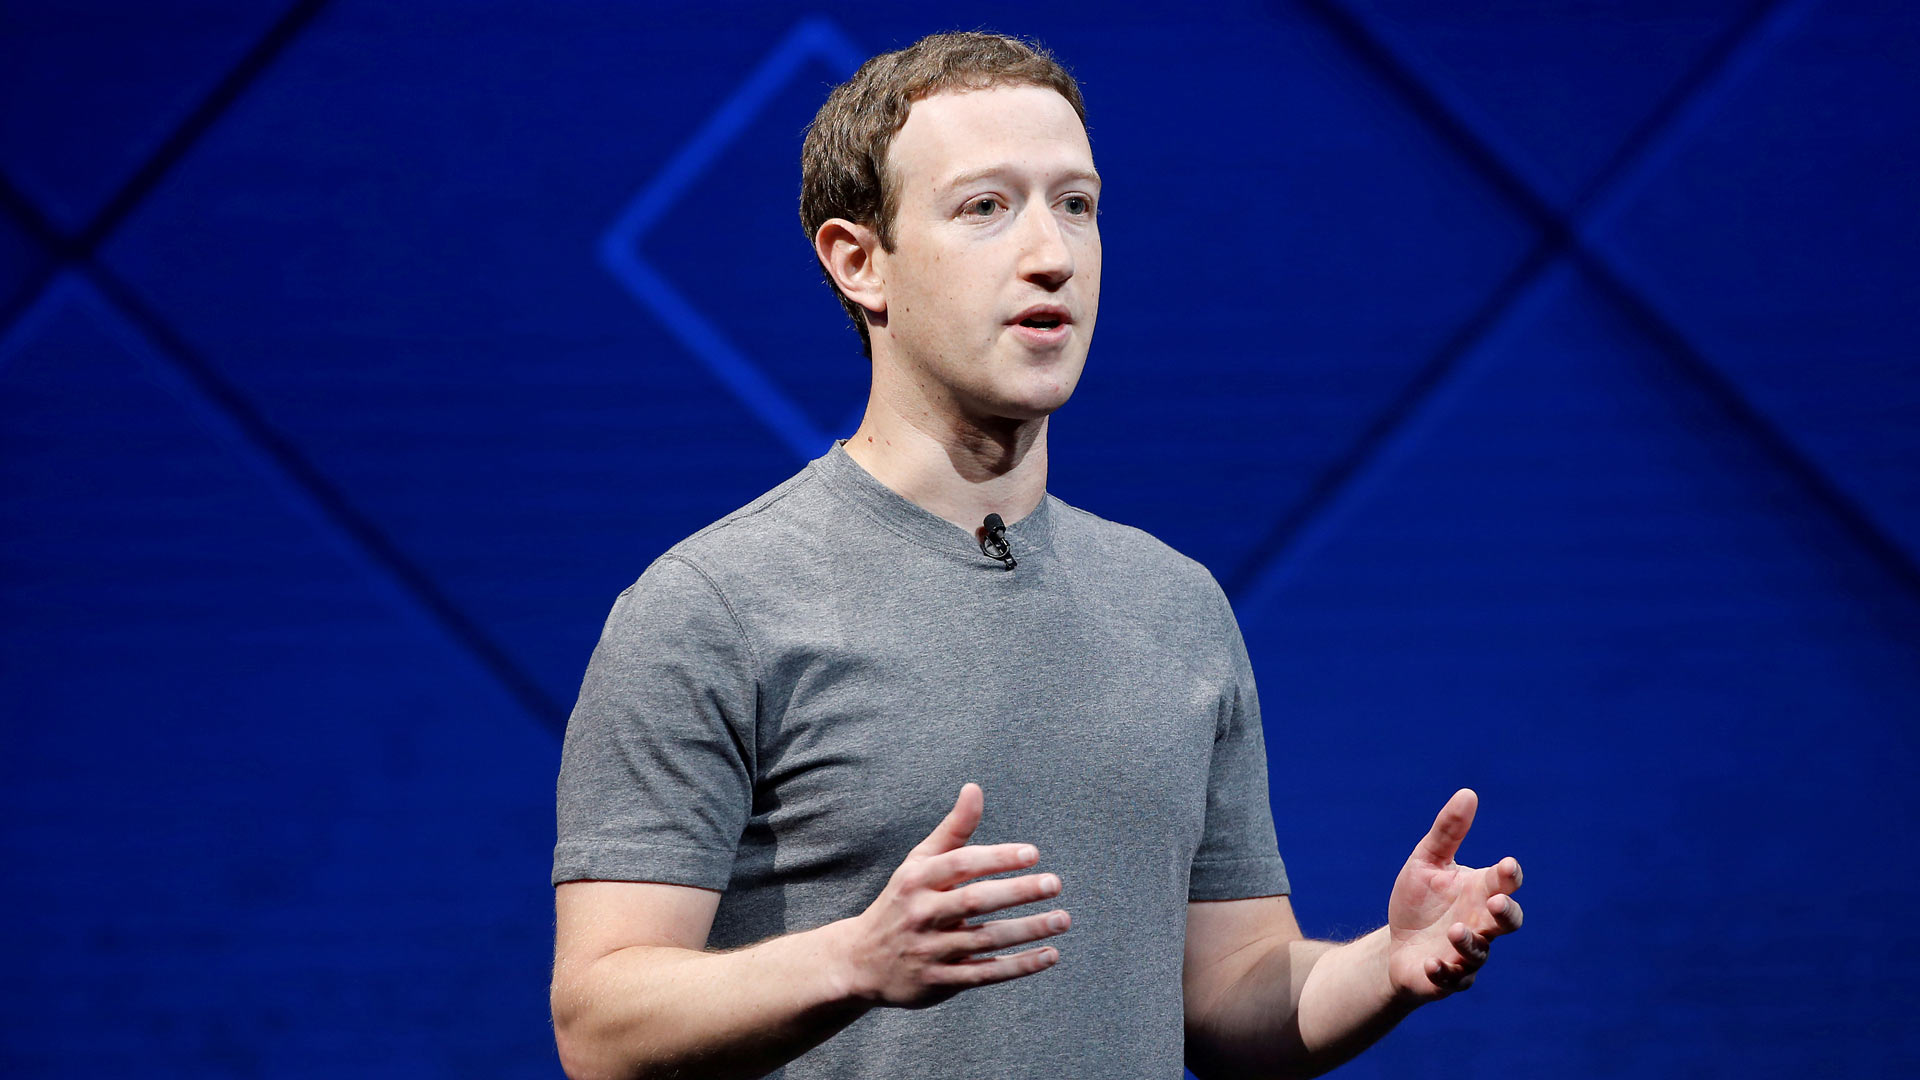 El Parlamento británico pide explicaciones a Zuckerberg sobre Cambridge Analytica